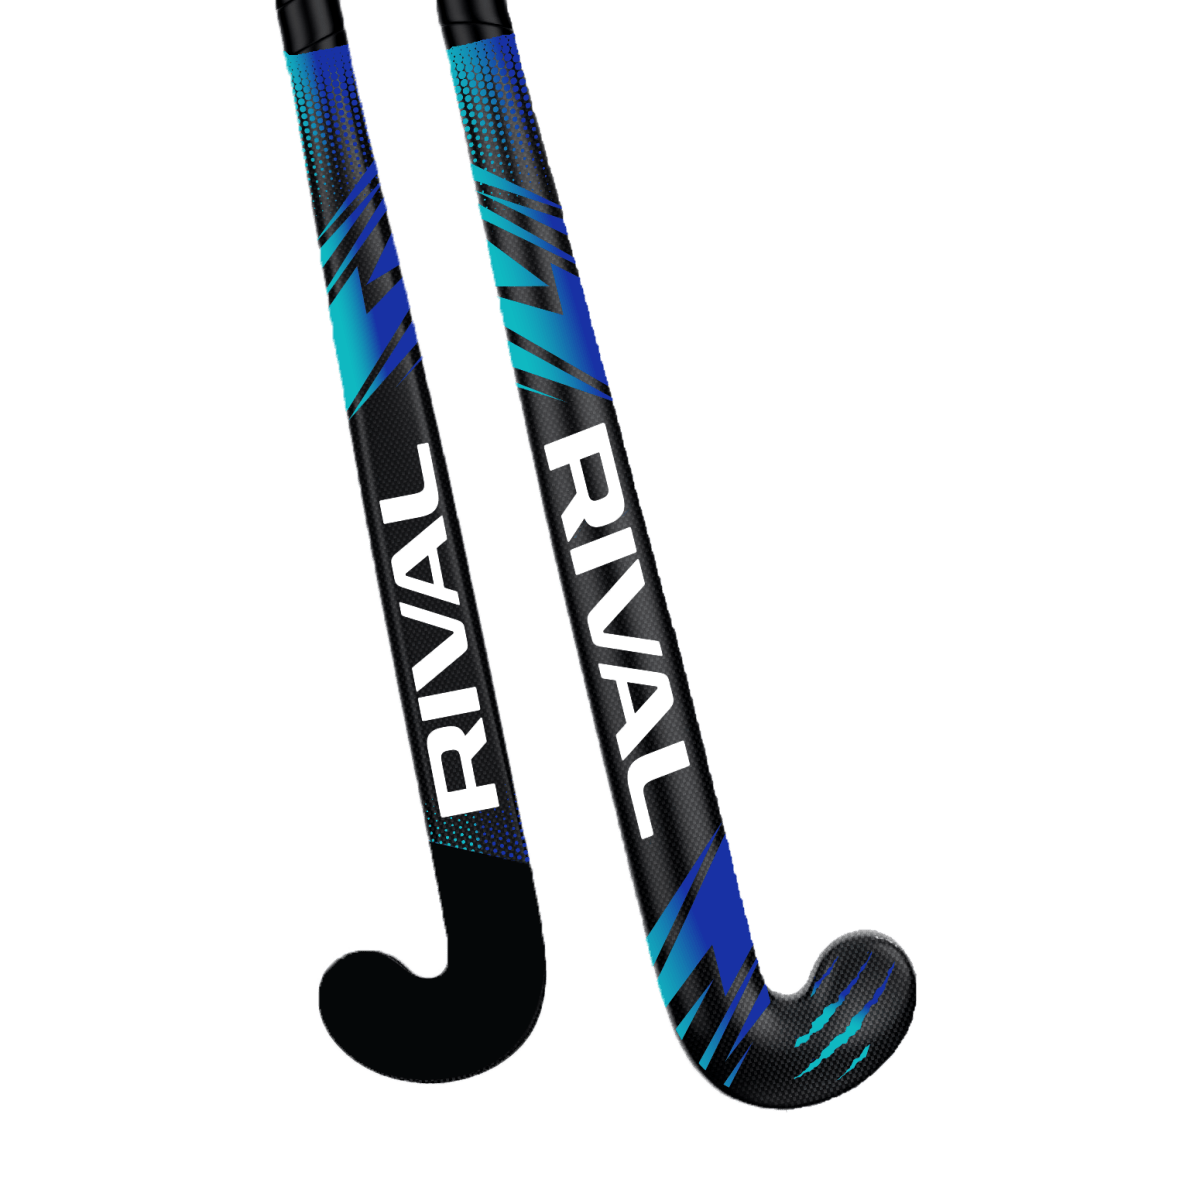 Rival JR MB10 Mid Bow Hockey Stick - field hockey